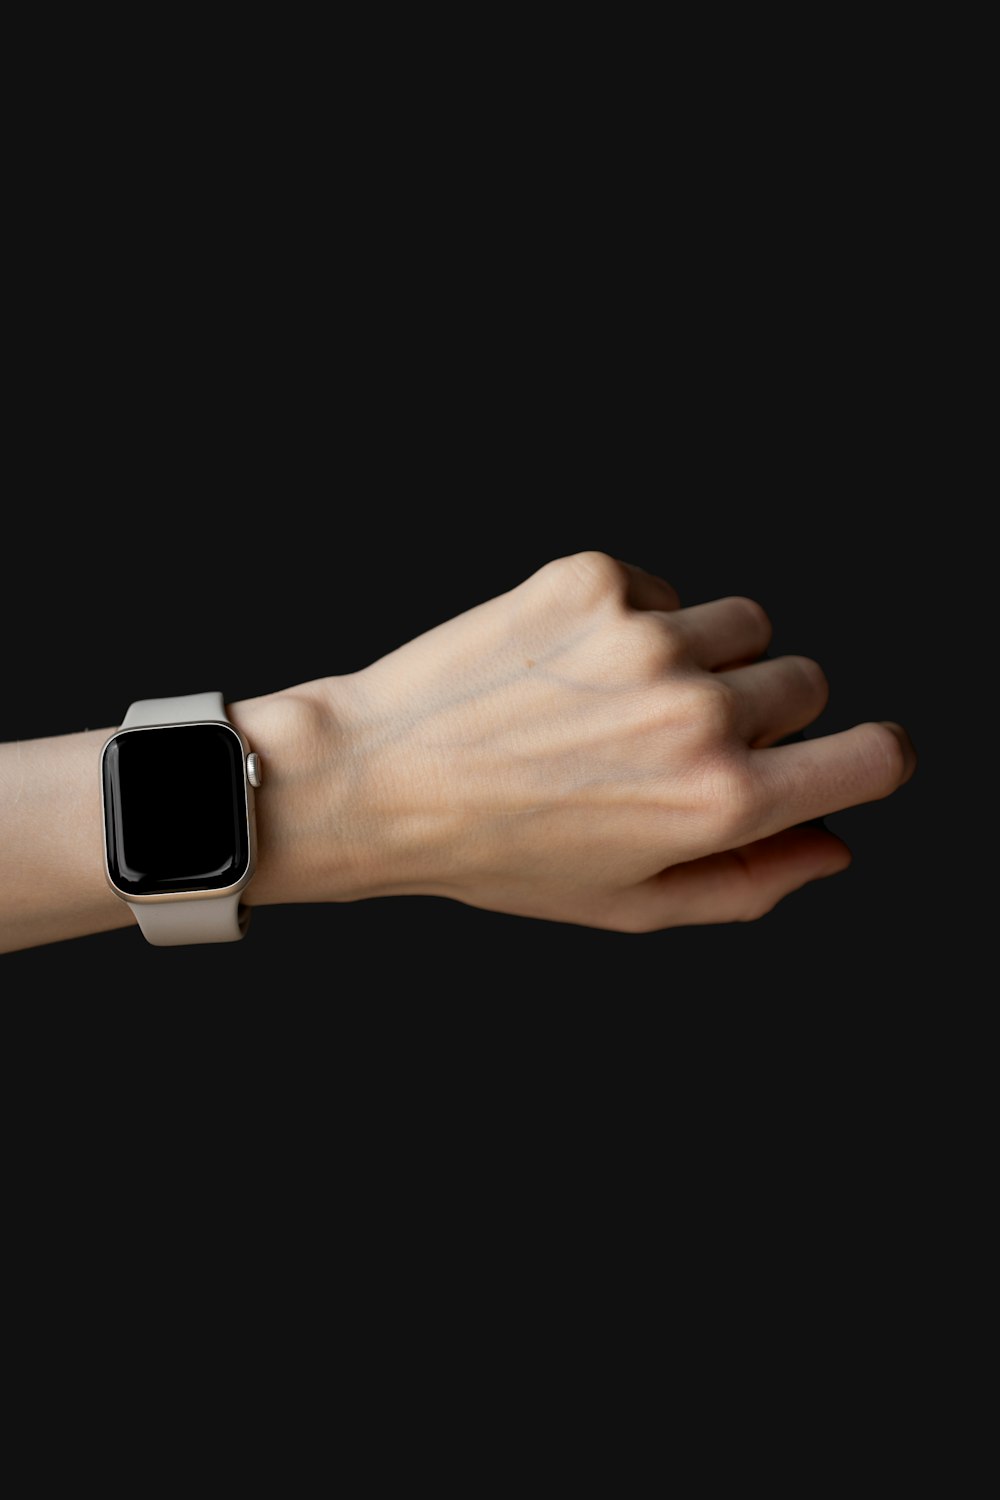 La main d’une femme avec une Apple Watch dessus